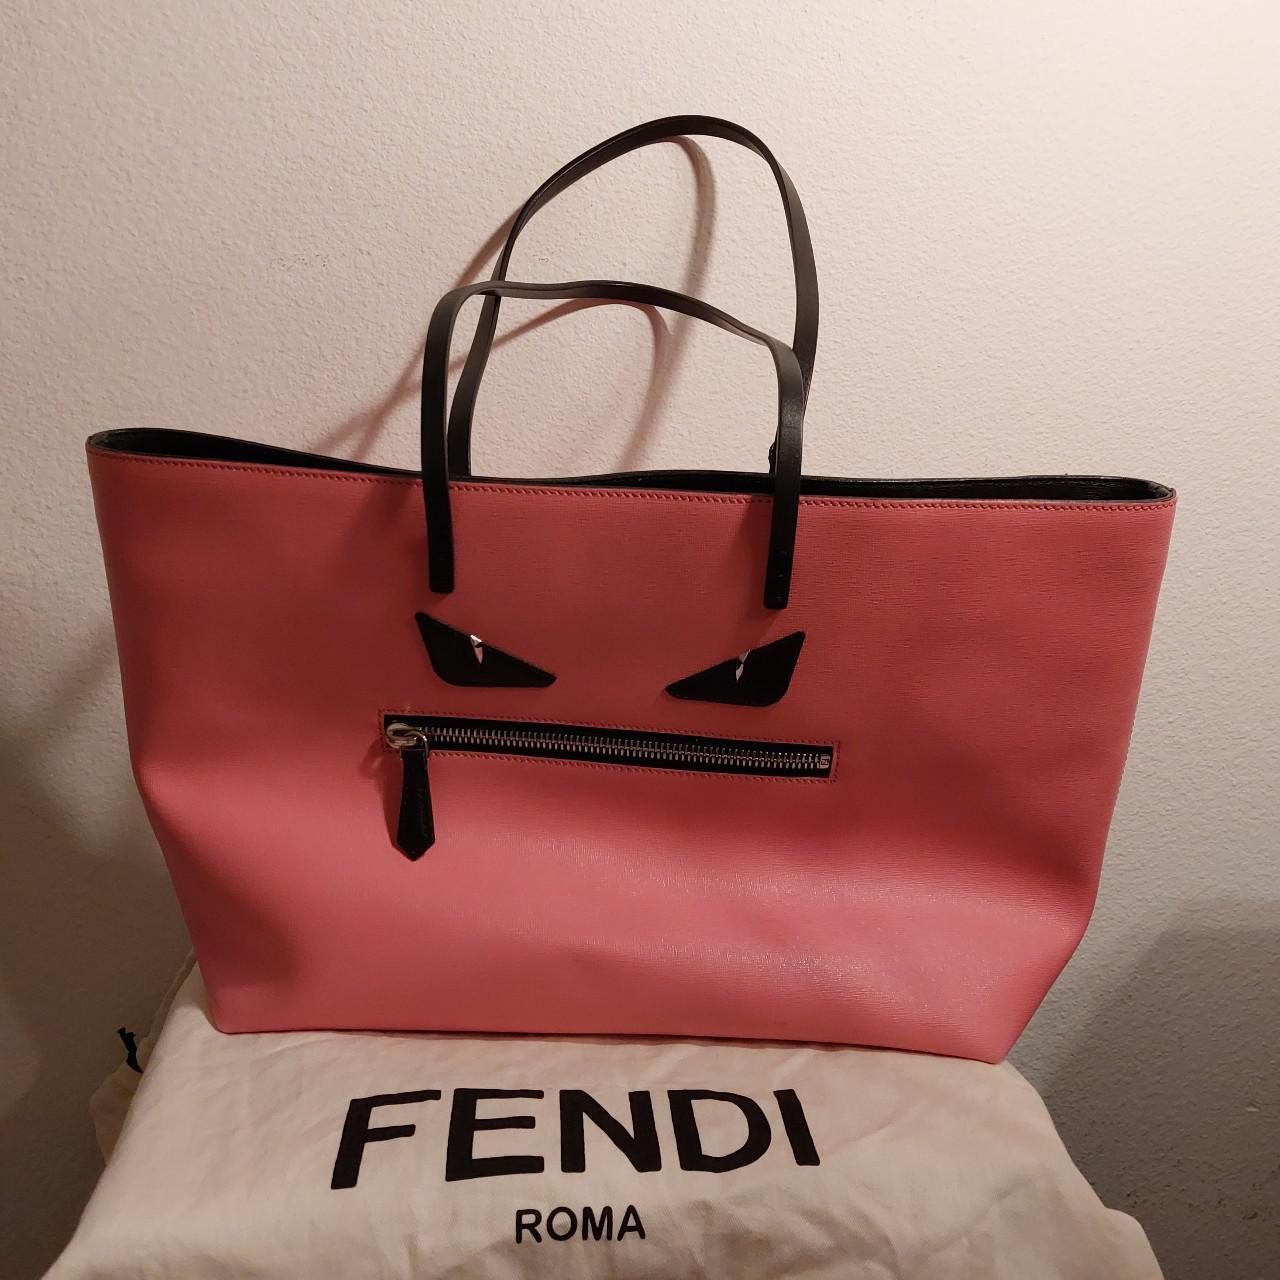 Fendi tote!!! This Fendi monster pink roll bag is - Depop